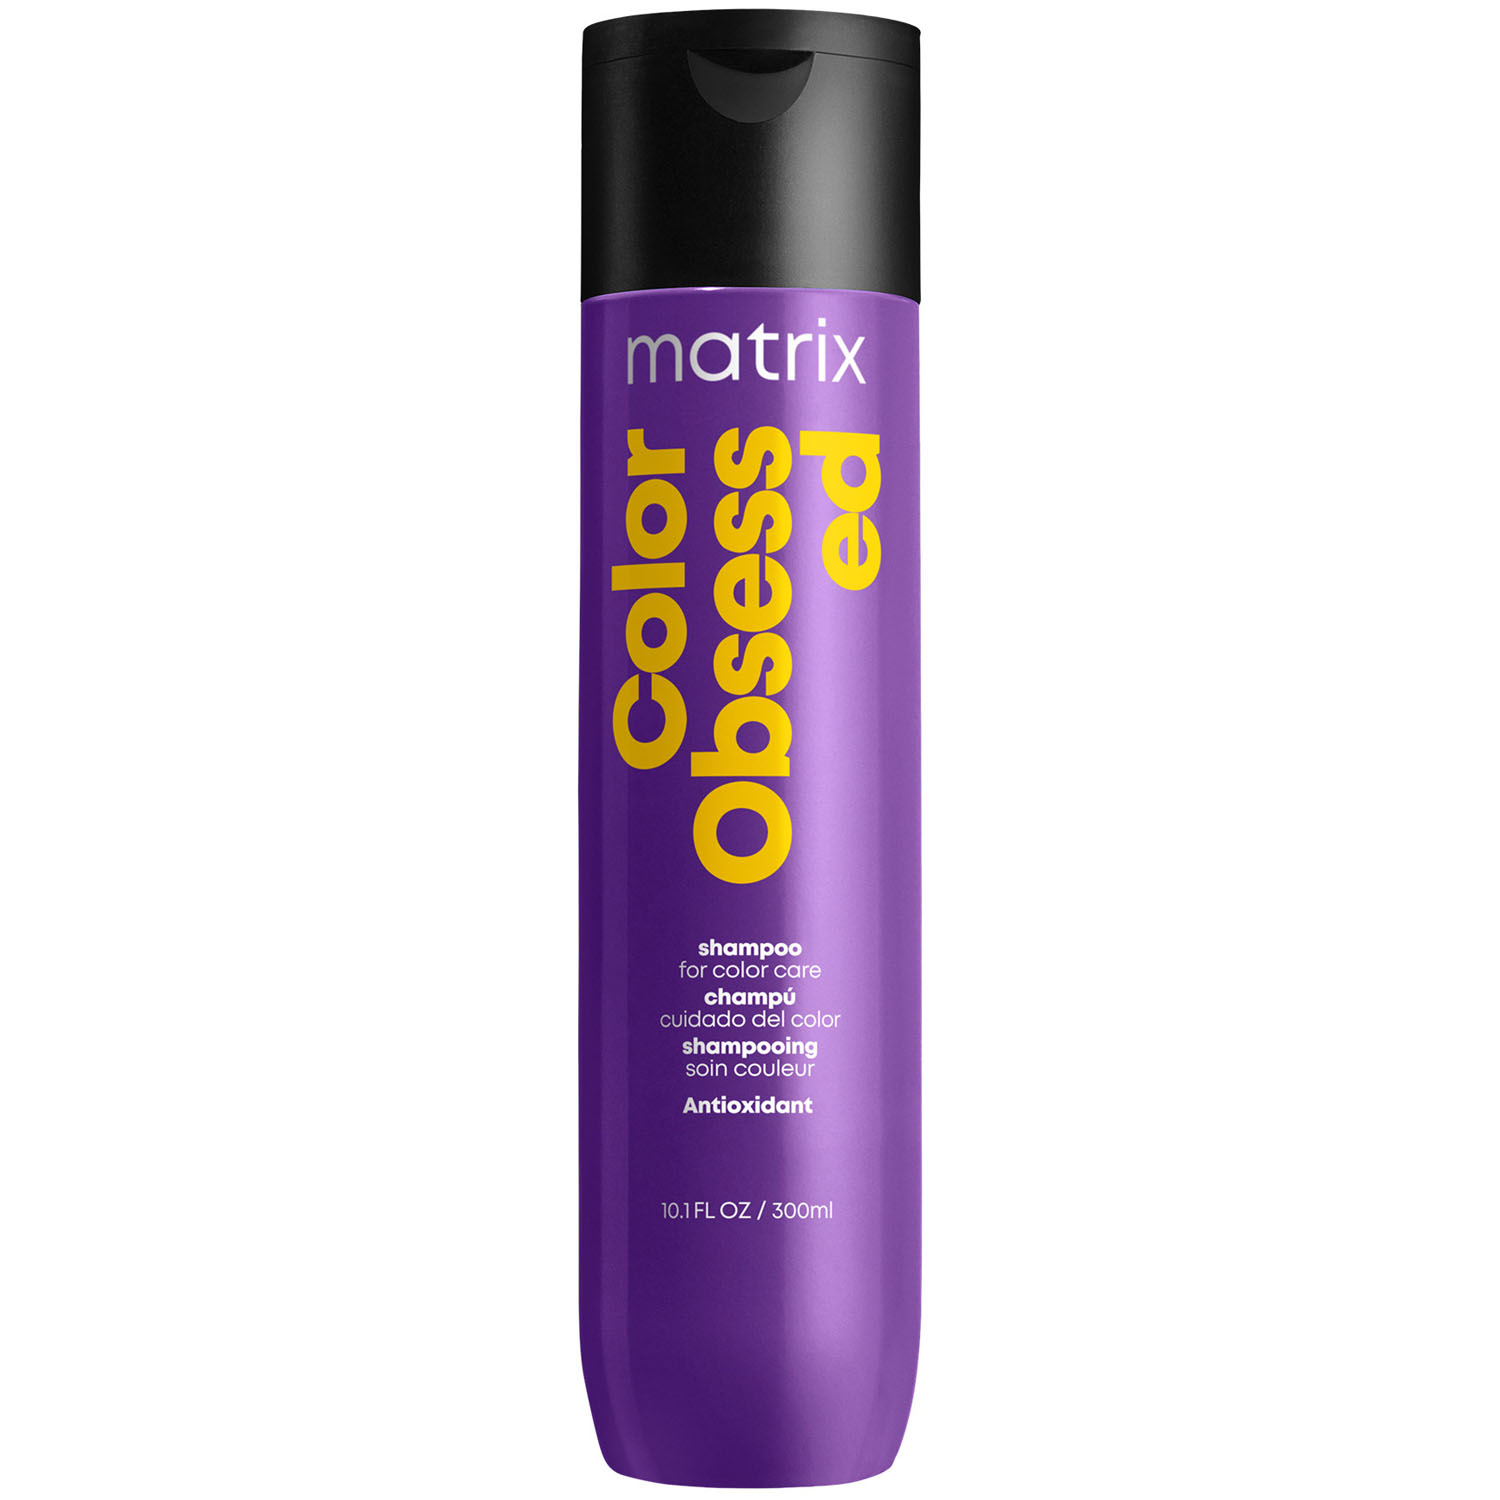 Matrix Шампунь с антиоксидантами для окрашенных волос, 300 мл (Matrix, Total results)